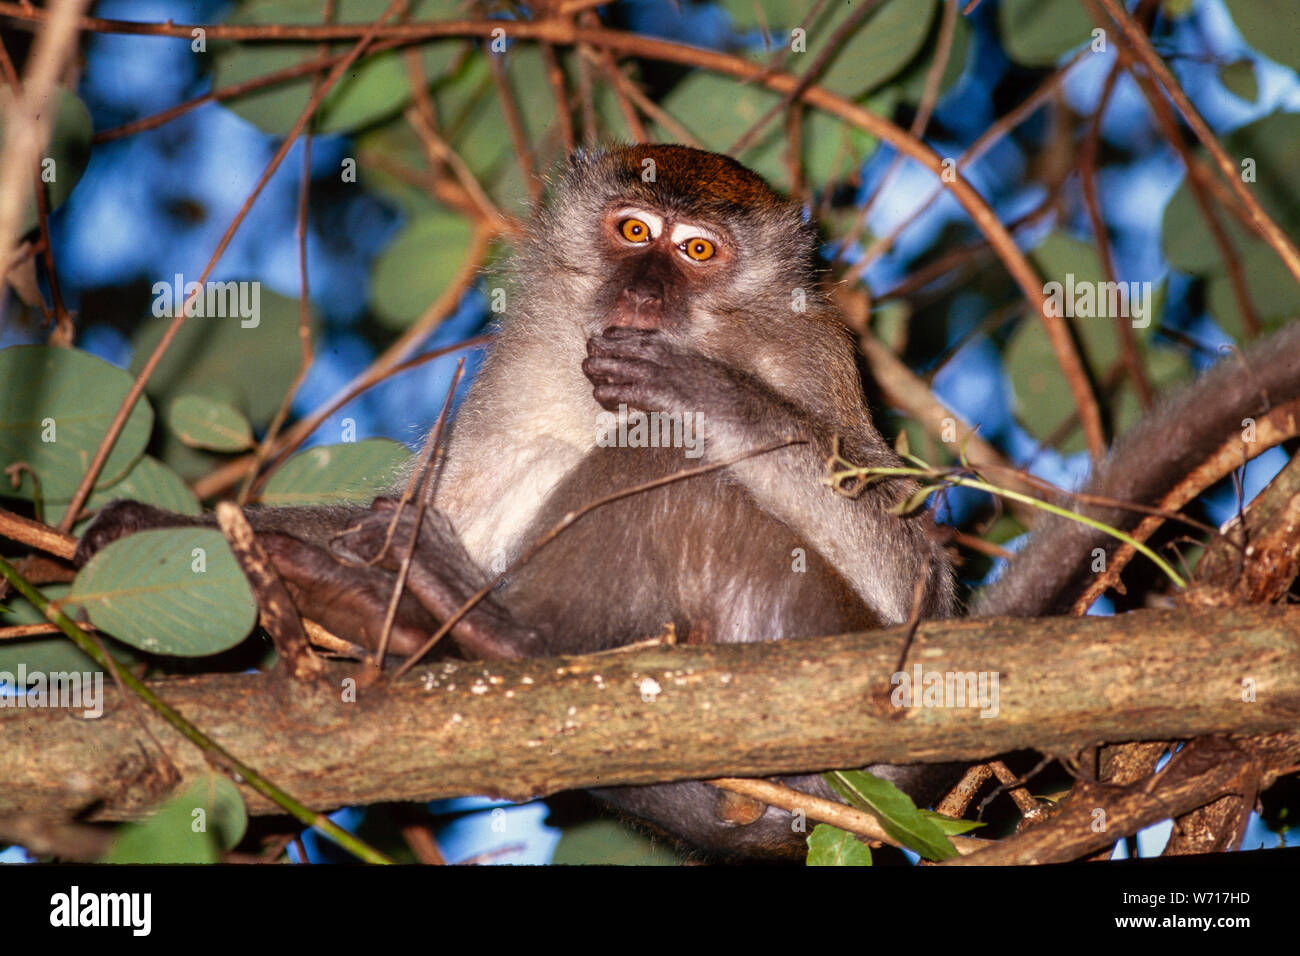 Singe macaque, Macaca sp. Un "vieux monde" espèce de singe, Malaisie Banque D'Images